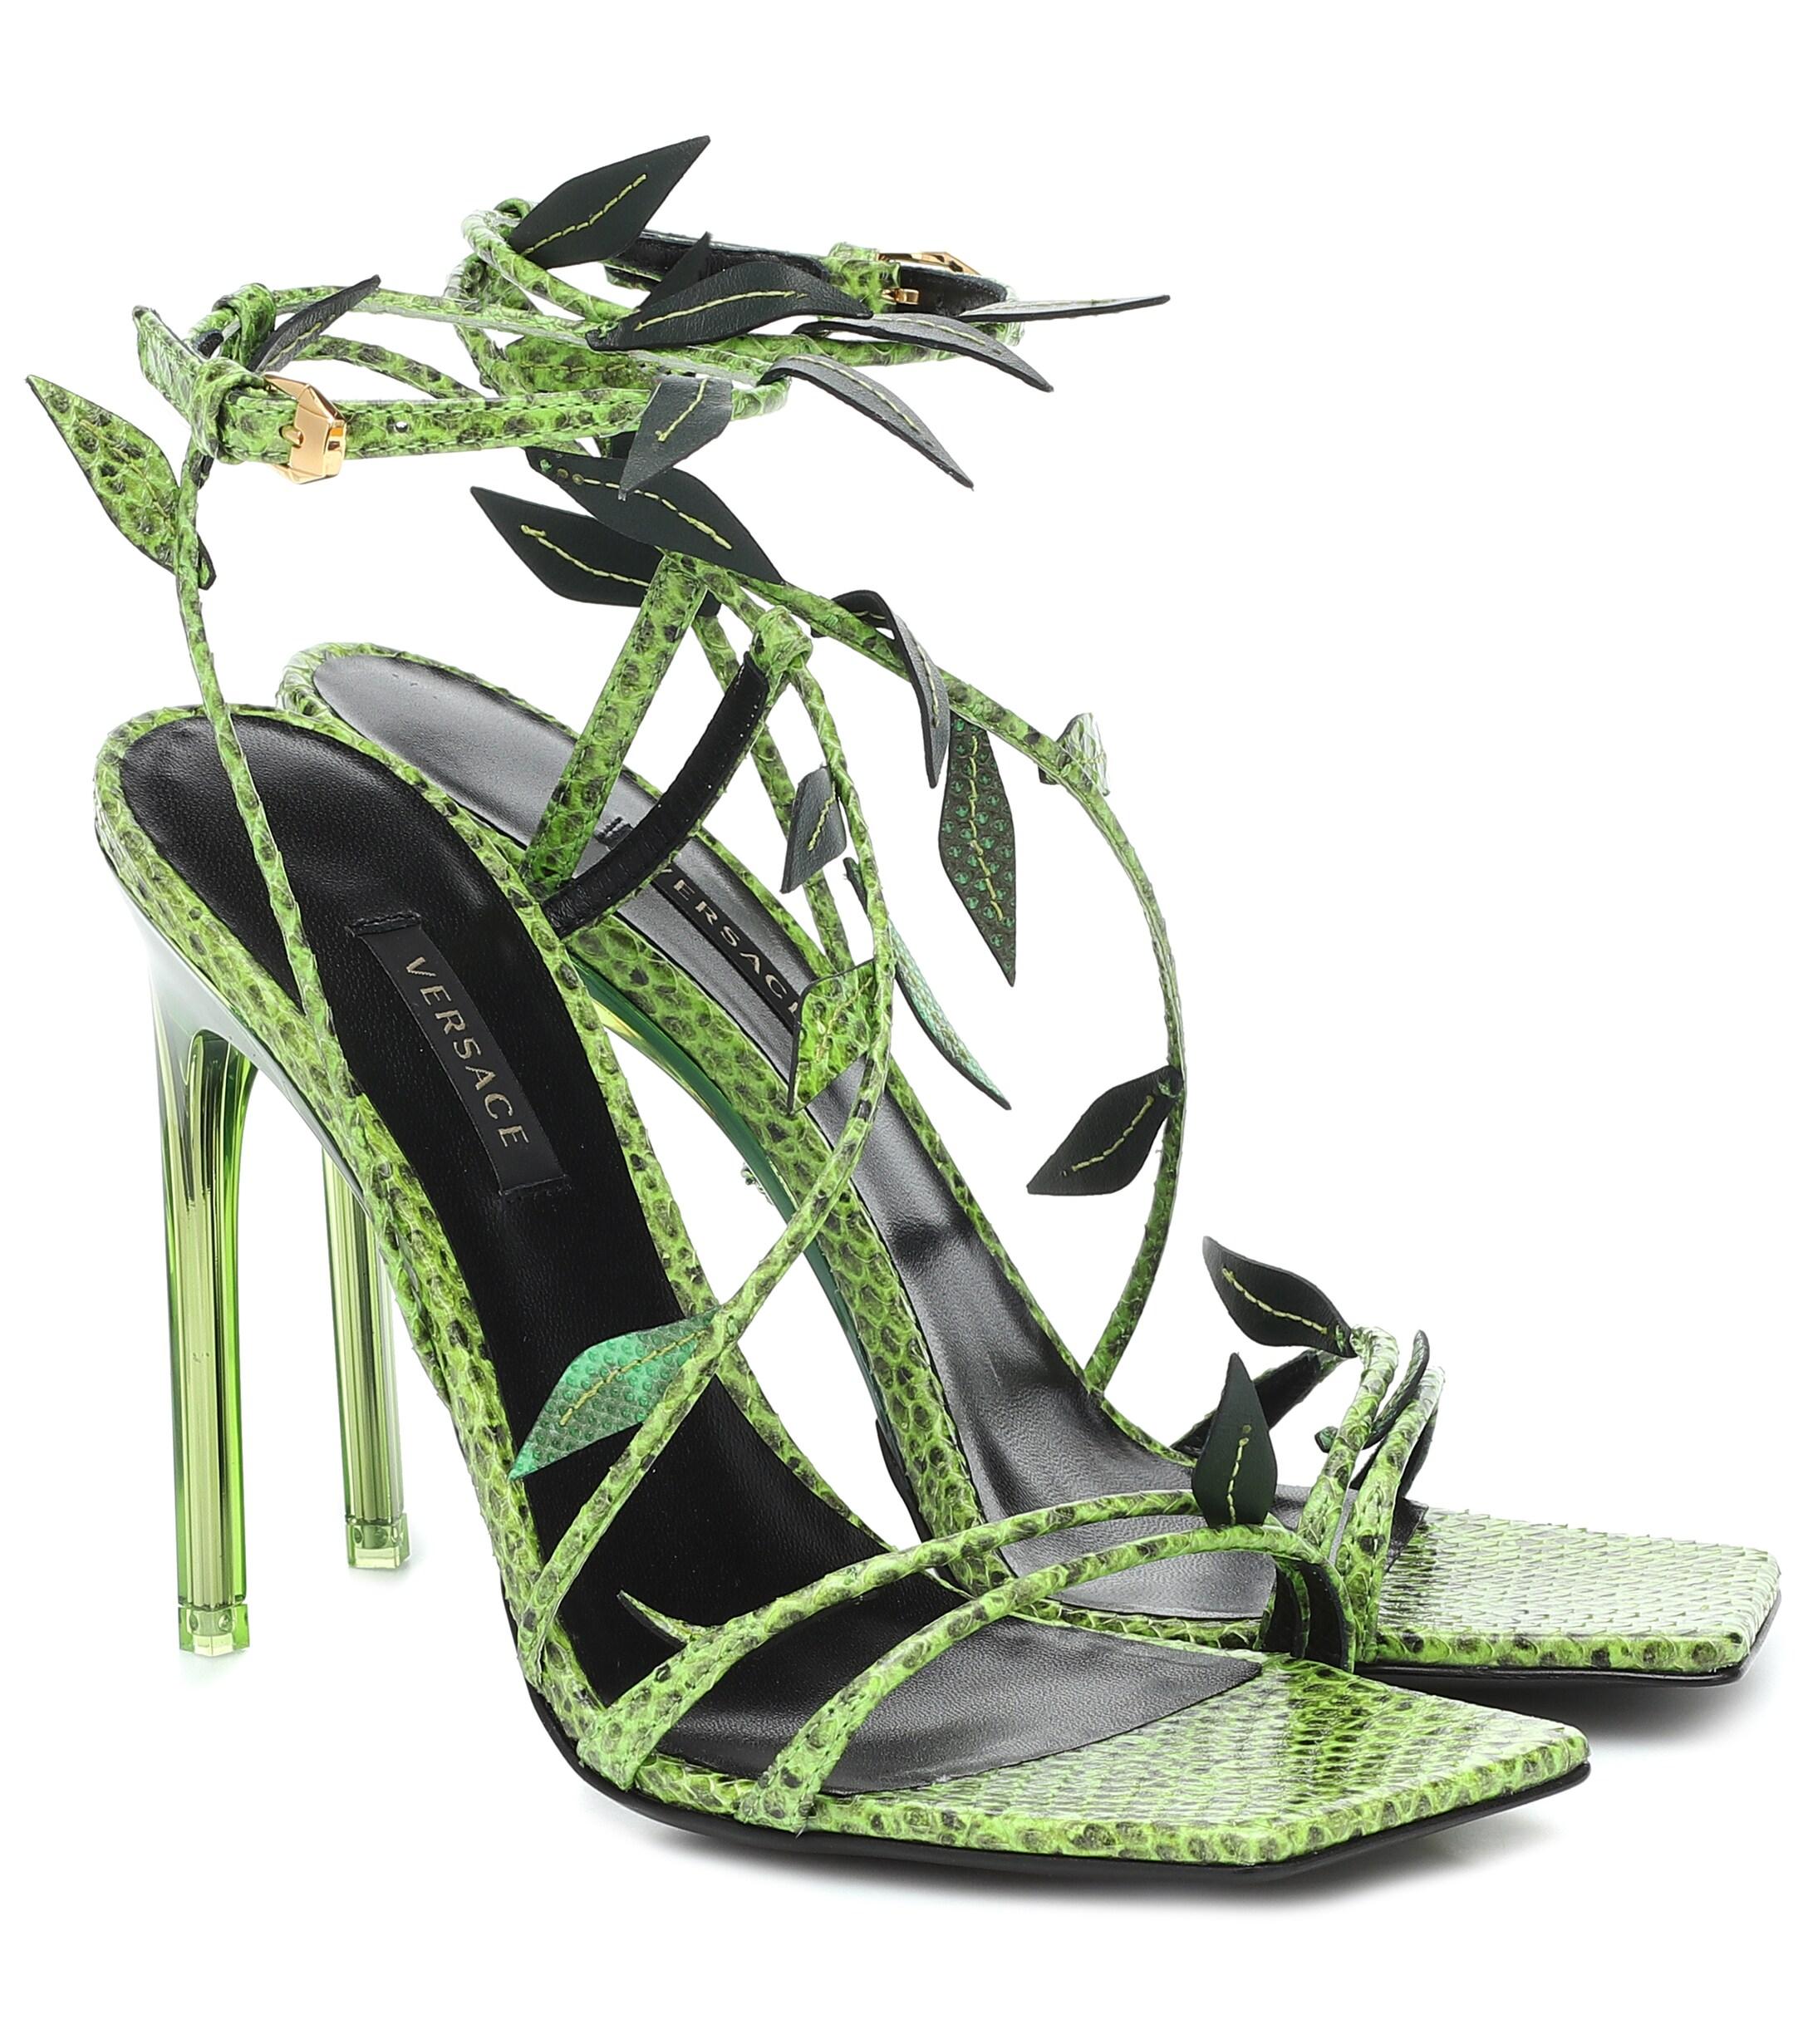 Giuseppe Zanotti Design Snakeskin Heels 39.5 in the Box | eBay